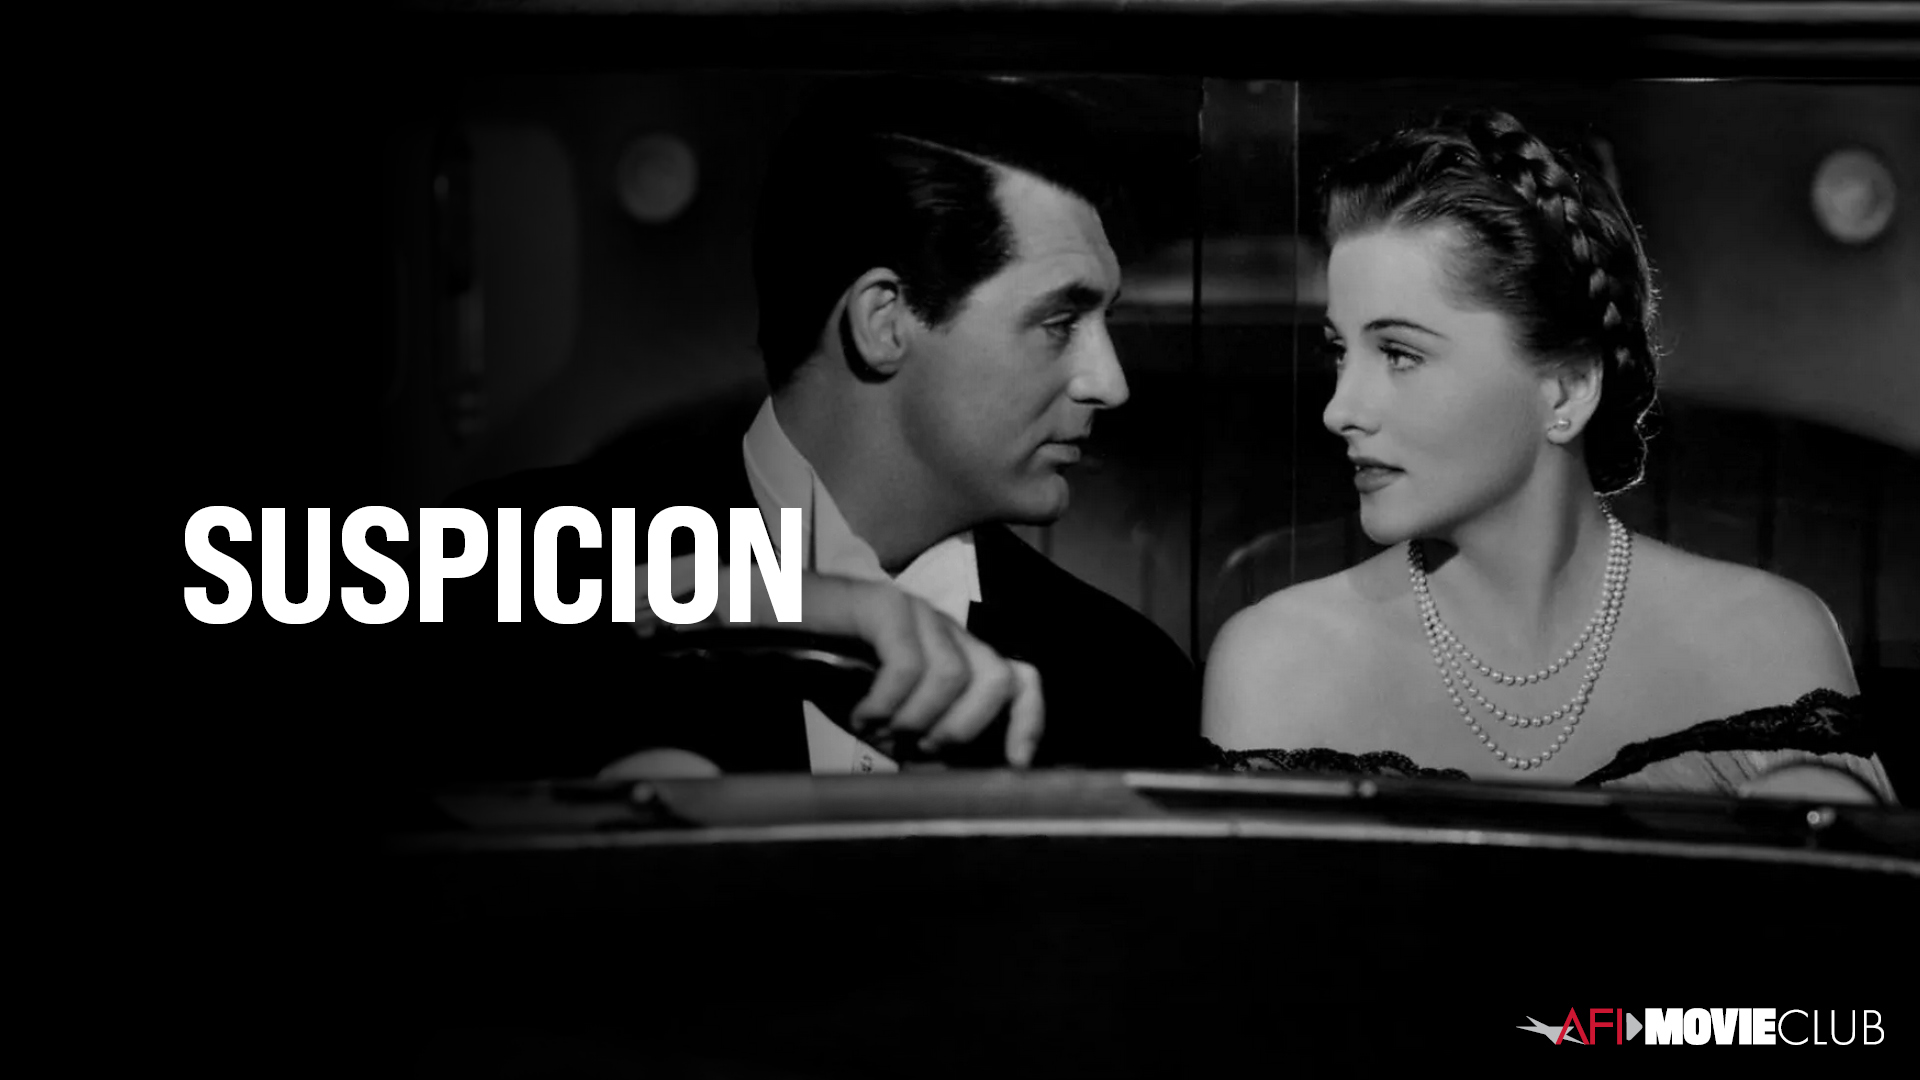 Suspicion Film Still - Joan Fontaine and Cary Grant